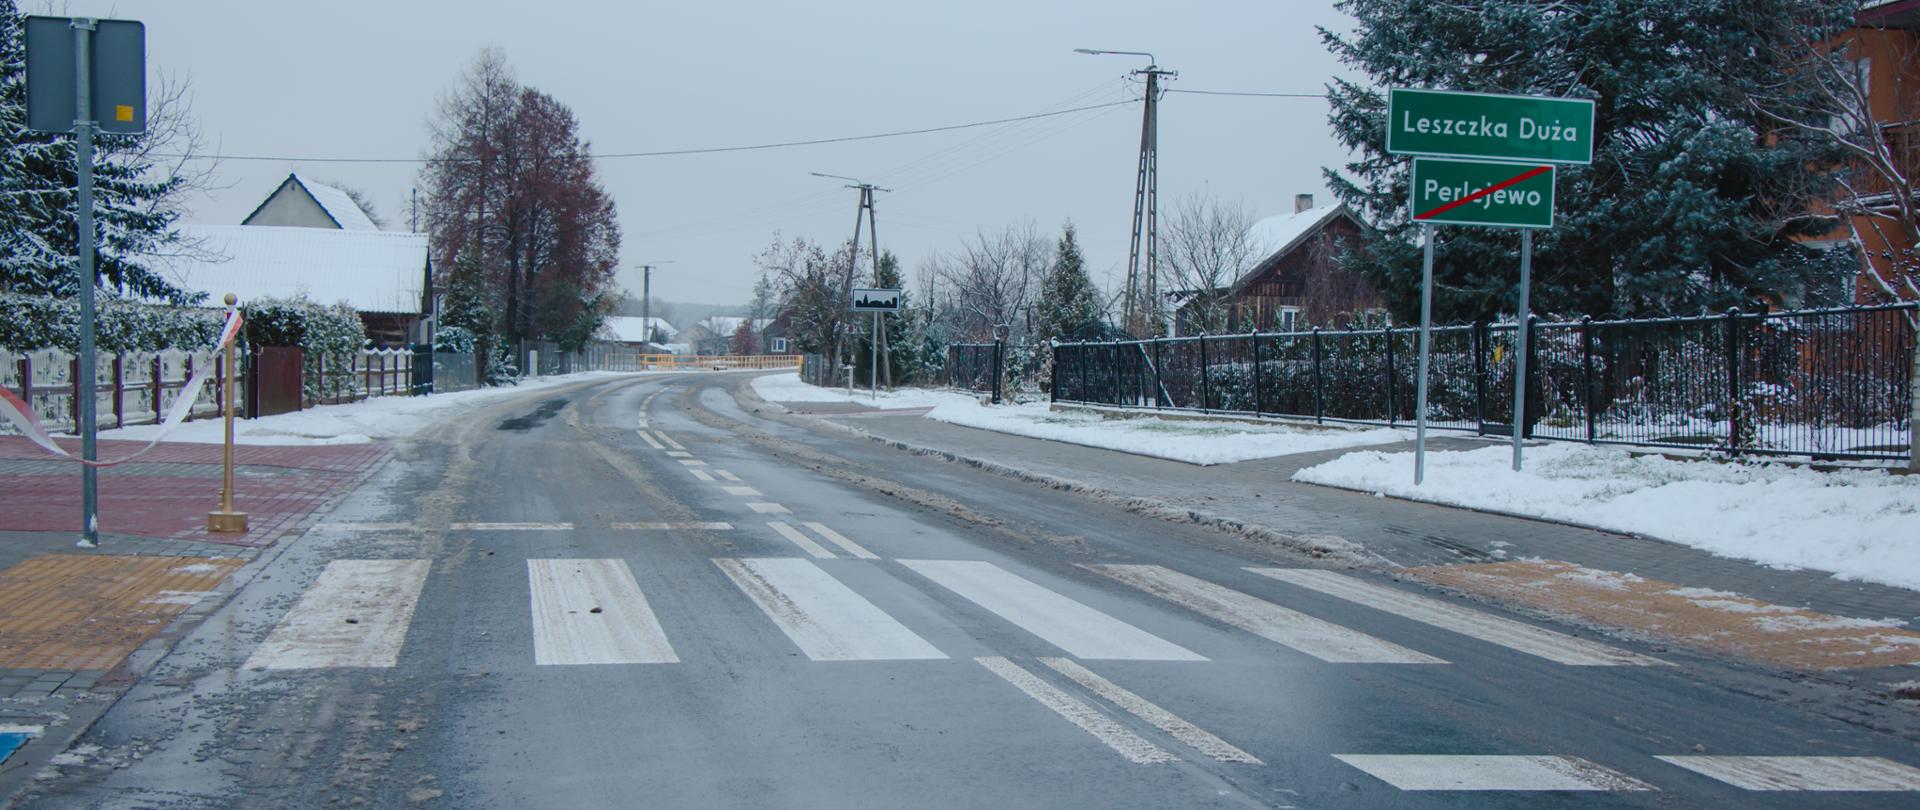 Otwarcie drogi w Leszczce Dużej (Gmina Perlejewo)